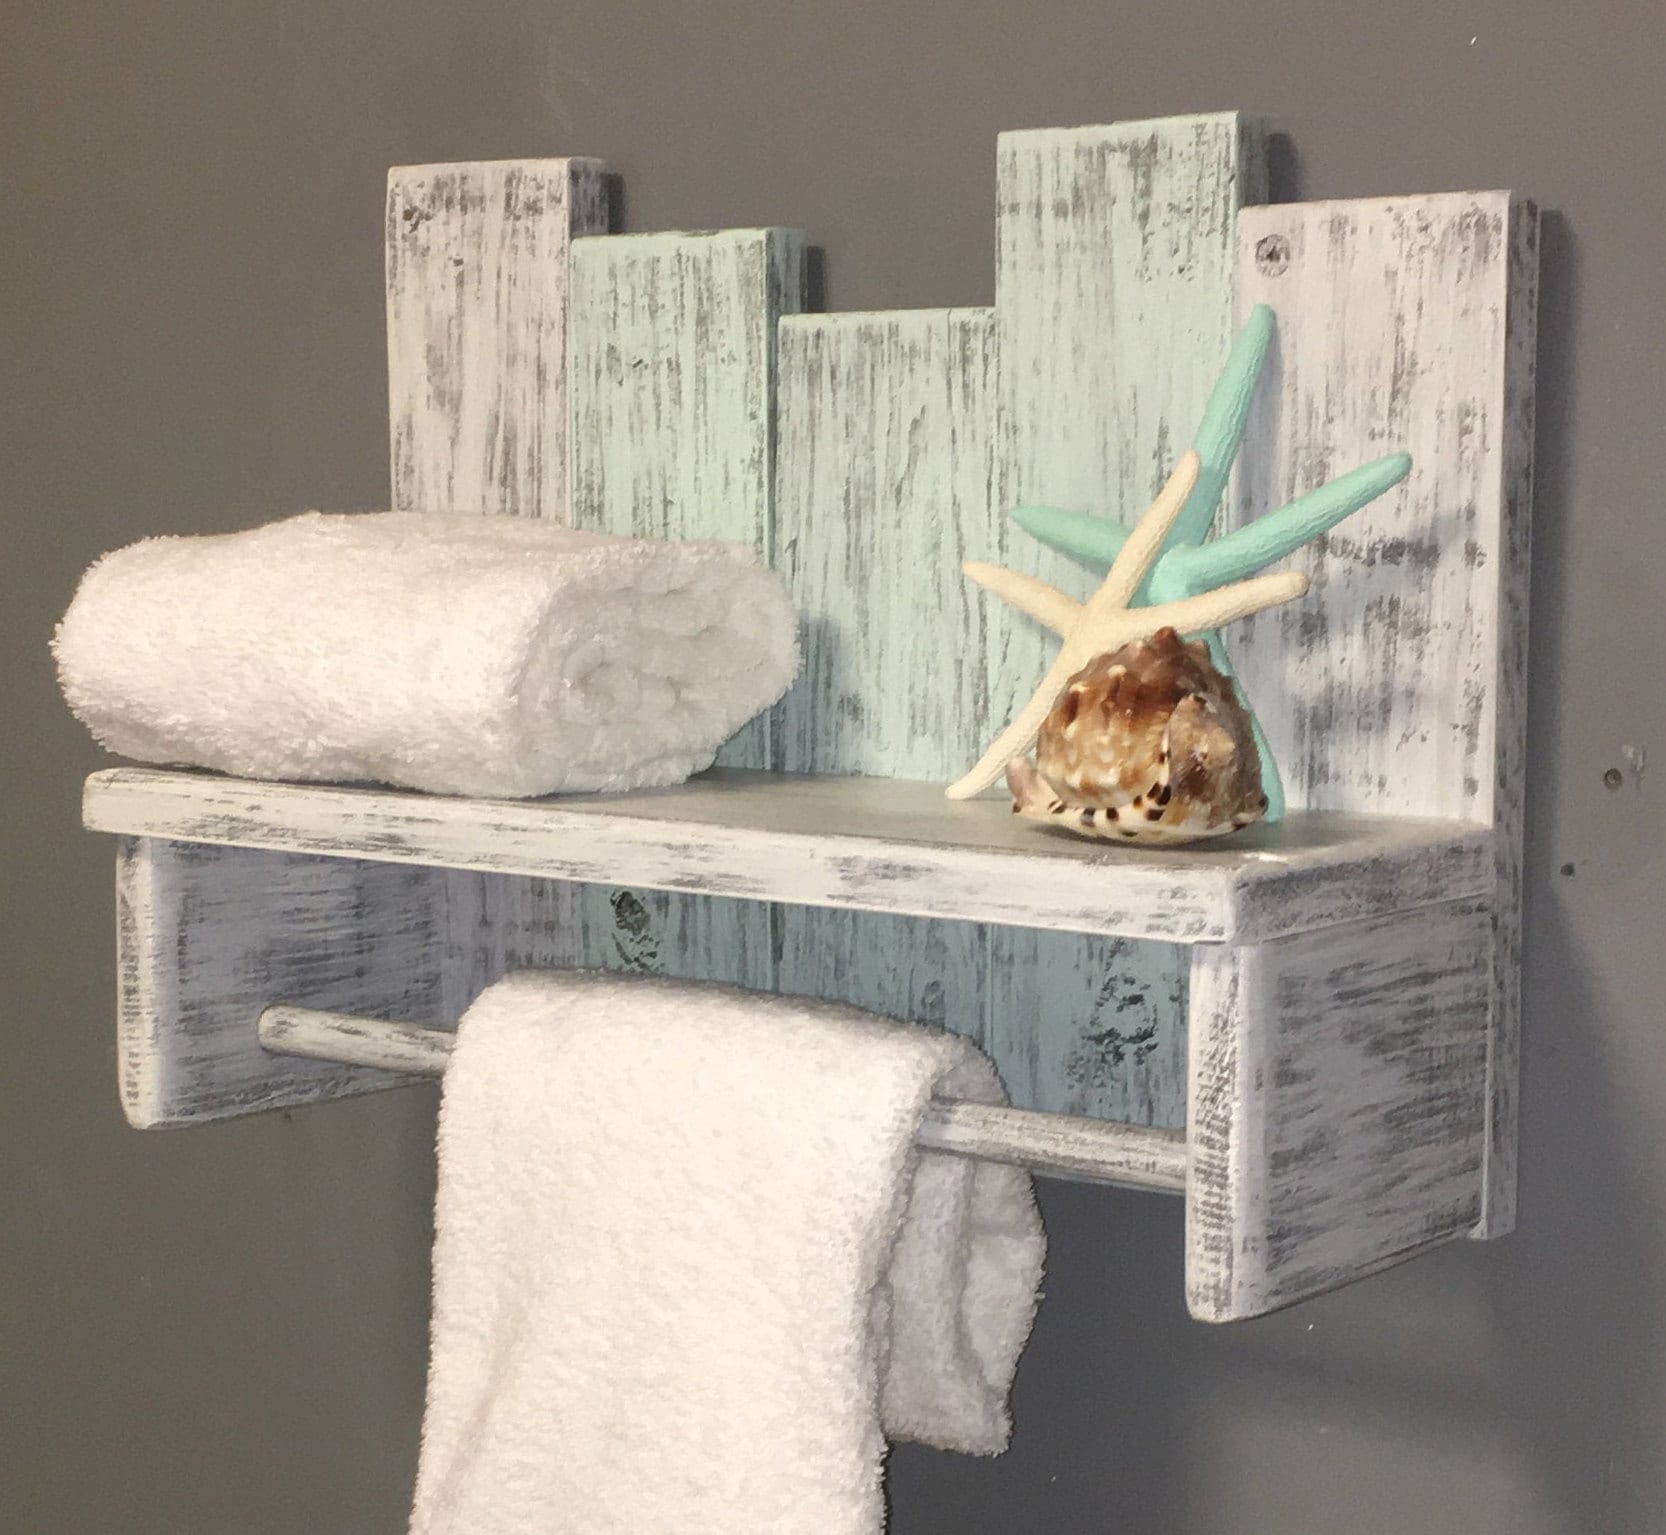 AMADA HOMEFURNISHING Floating Shelves, Bathroom Shelf with Towel Bar, Wall  Shelves for Bathroom/Living Room/Kitchen/Bedroom, Light Brown Shelves Set